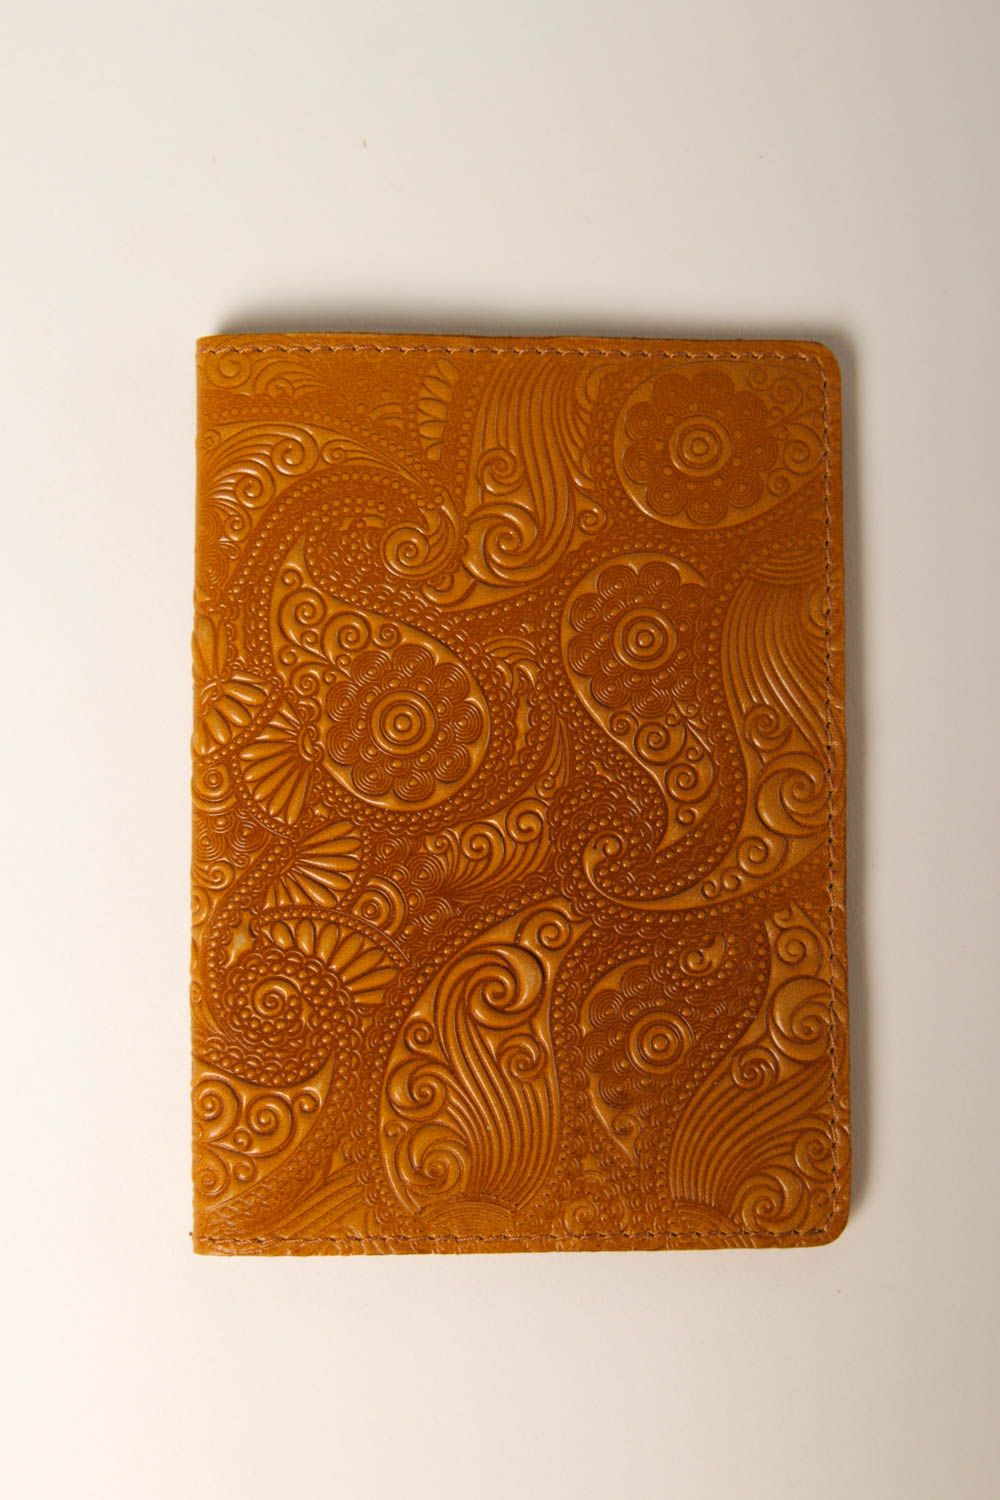 Аксессуар из кожи handmade оригинальный подарок с орнаментом обложка на паспорт фото 3